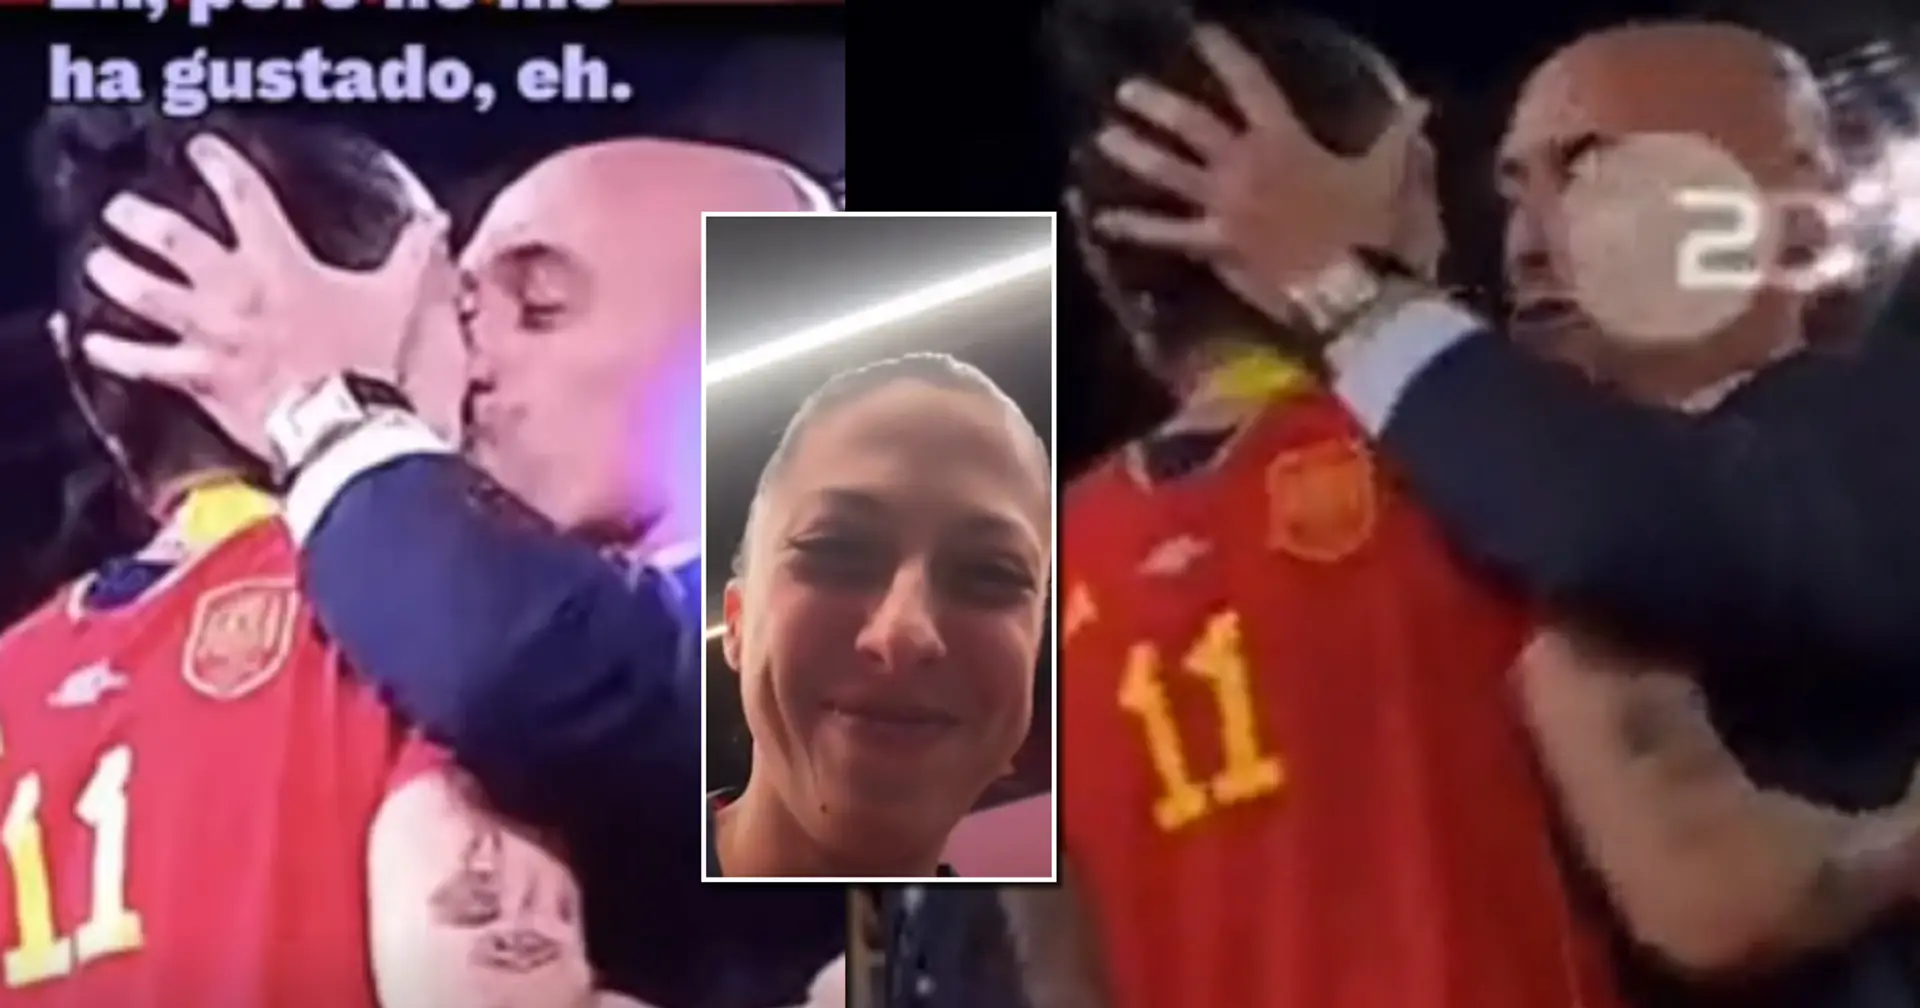 'Non mi è piaciuto': Jenni Hermoso reagisce al bacio del presidente della FA durante i festeggiamenti per la vittoria della Coppa del Mondo